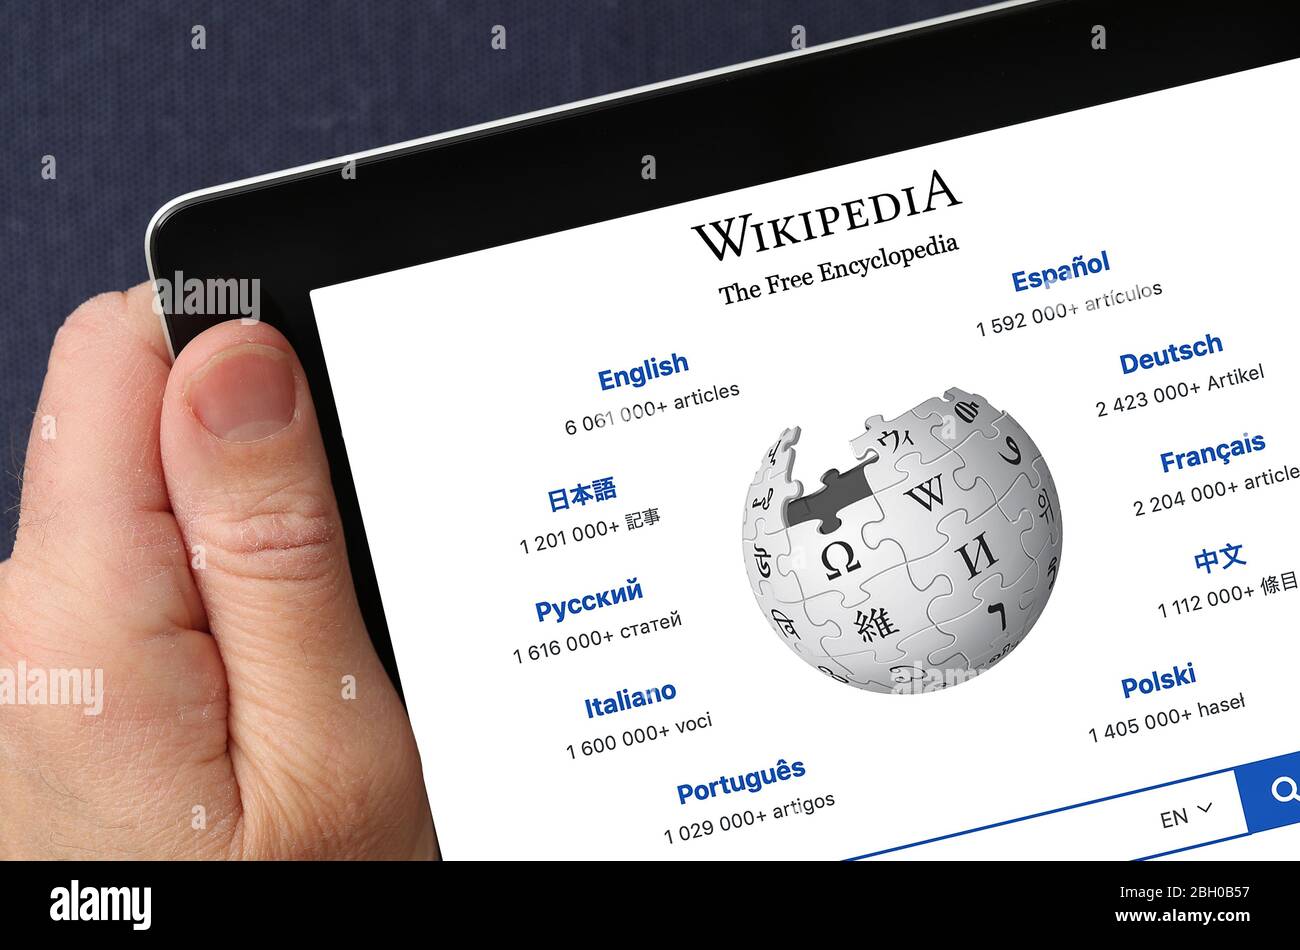 Site Web Wikipedia affiché sur un iPad Banque D'Images